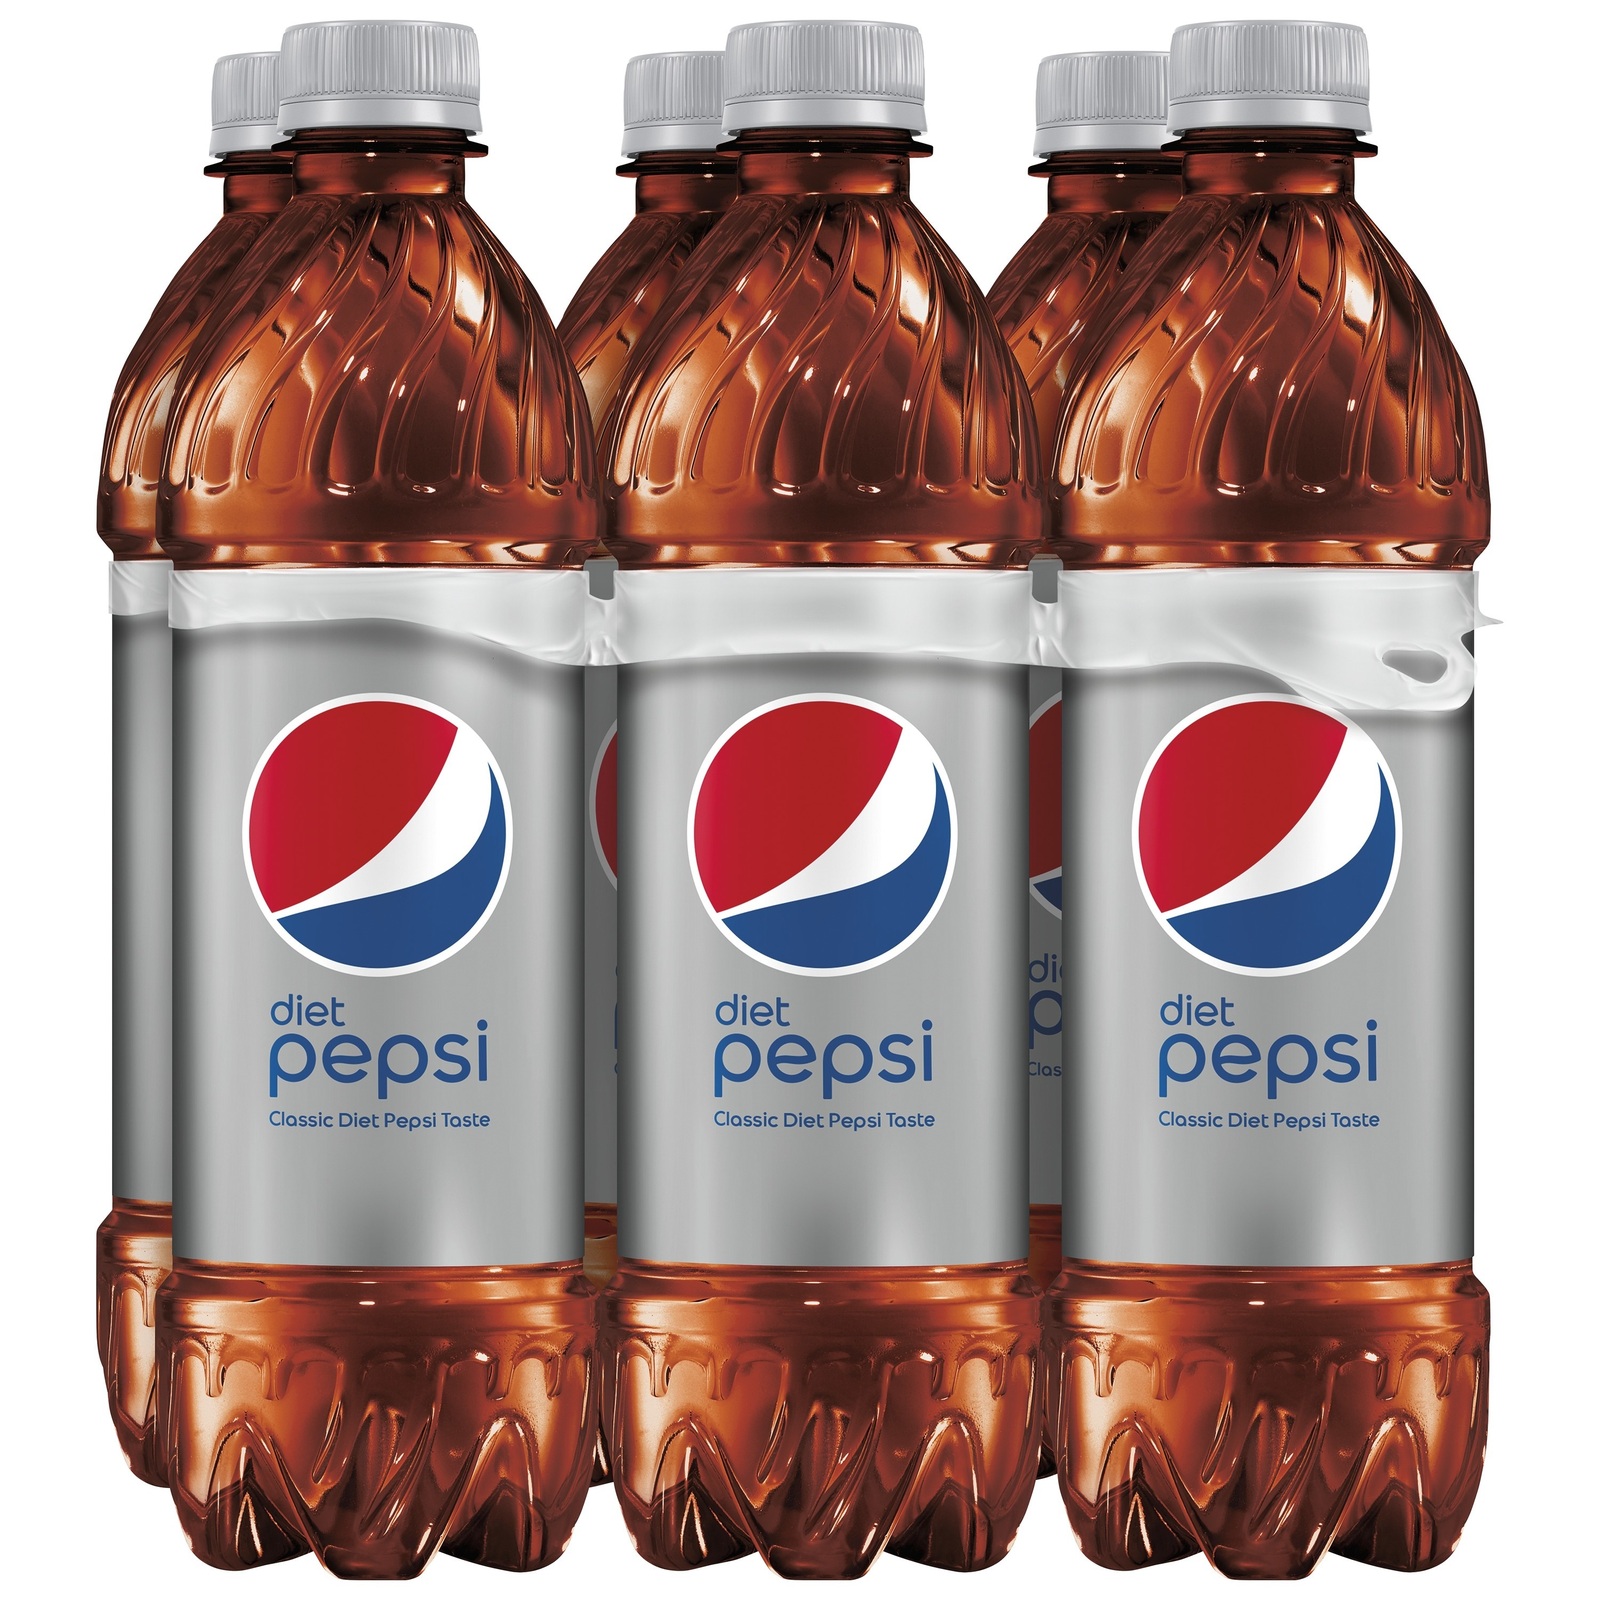 Diet Pepsi Soda Bottles - 16.9 fl oz (6 Count) Sugar Free Low Sodium Cola